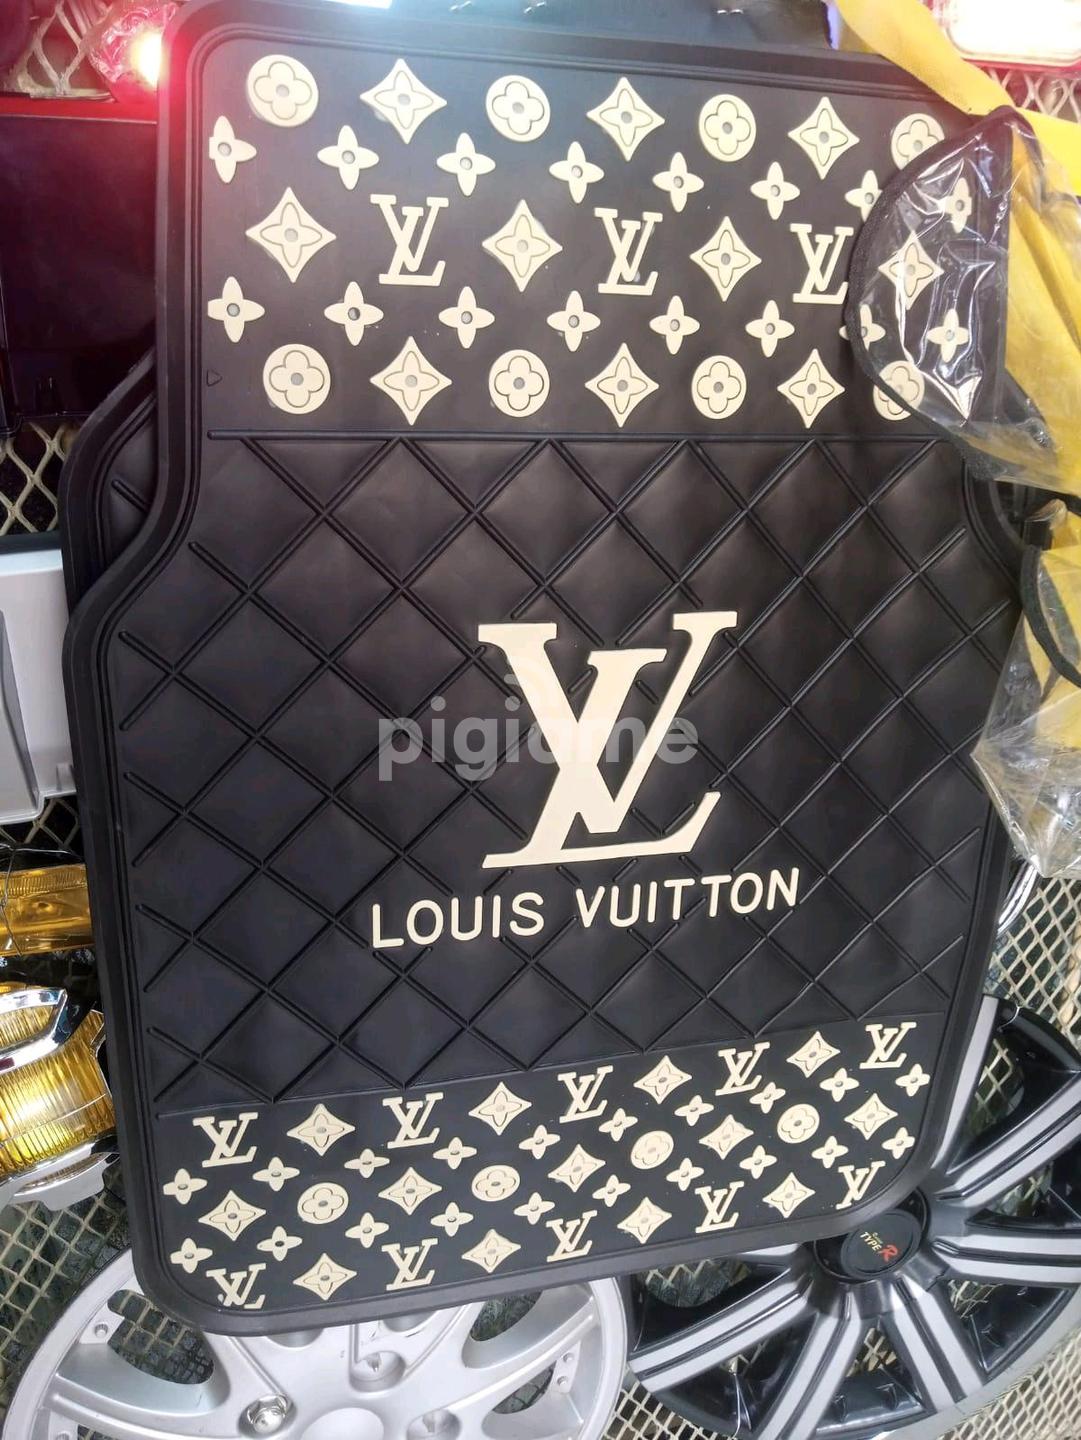 Luis Vuitton Branded Car Mat in Avenue Park, Moi Avenue